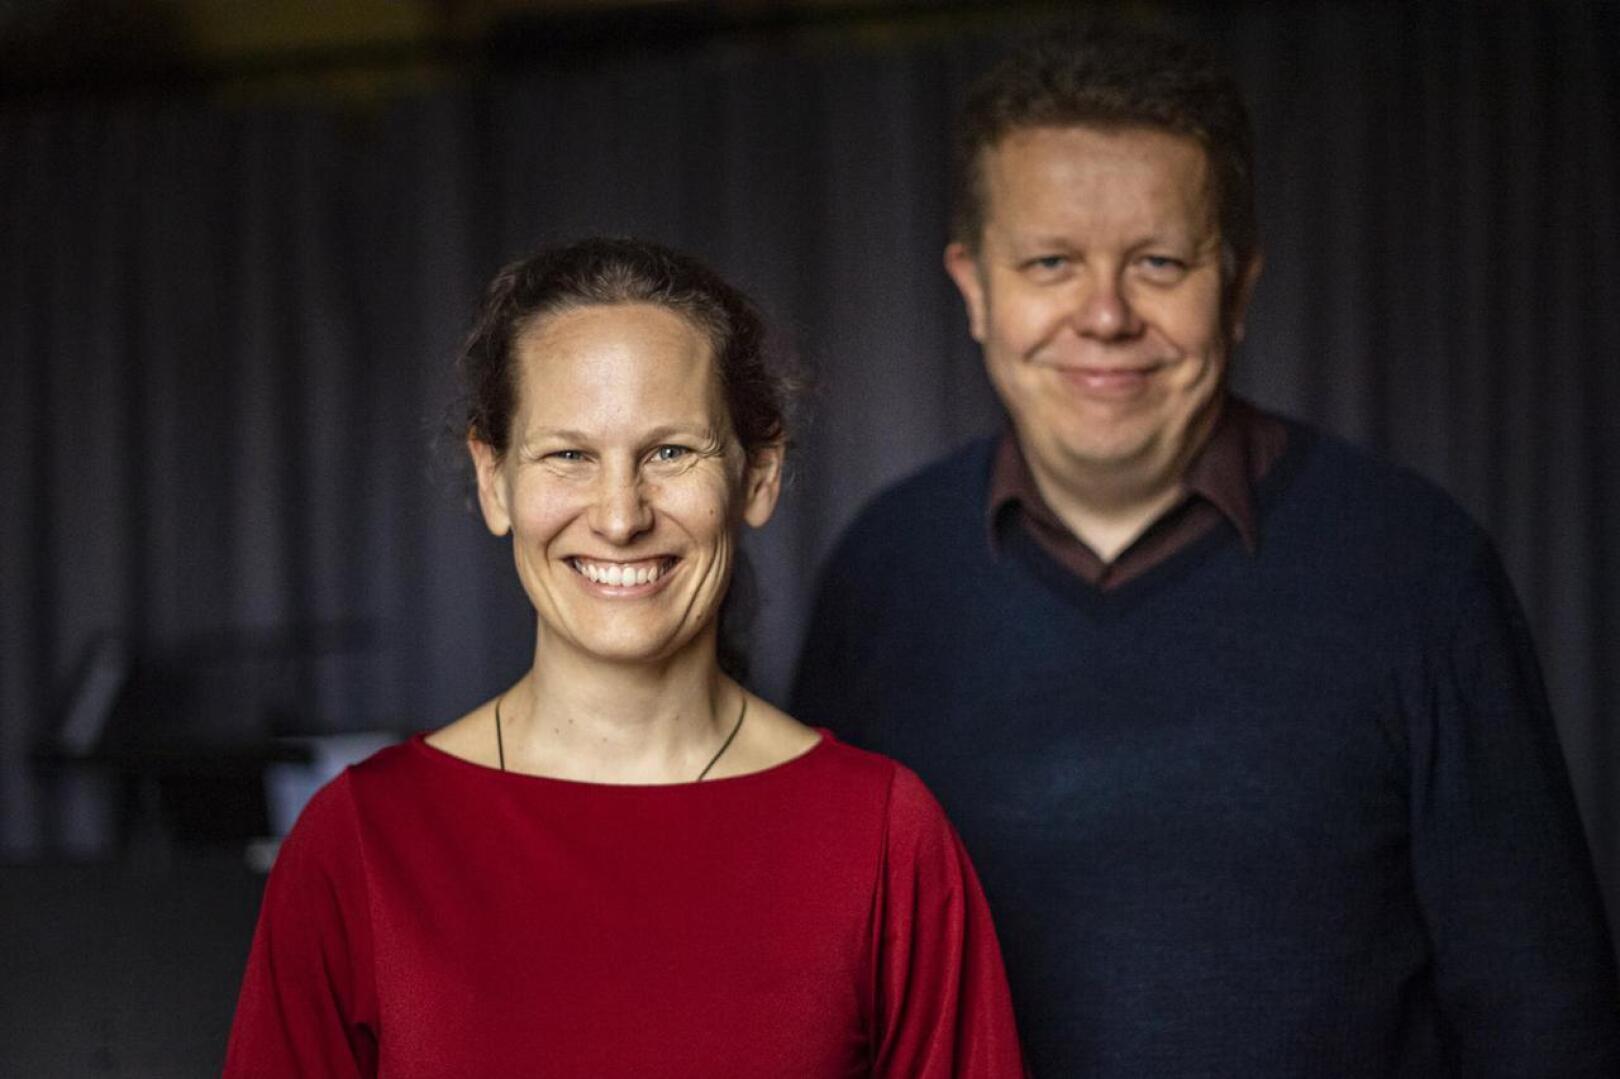 Malin Broman ja Lauri Pulakka iloitsevat siitä, että musiikkimaailmasta tulee entistä moniäänisempi. Keski-Pohjanmaan Kamariorkesterin konserteissa huomioidaan tasa-arvonäkökohdat.